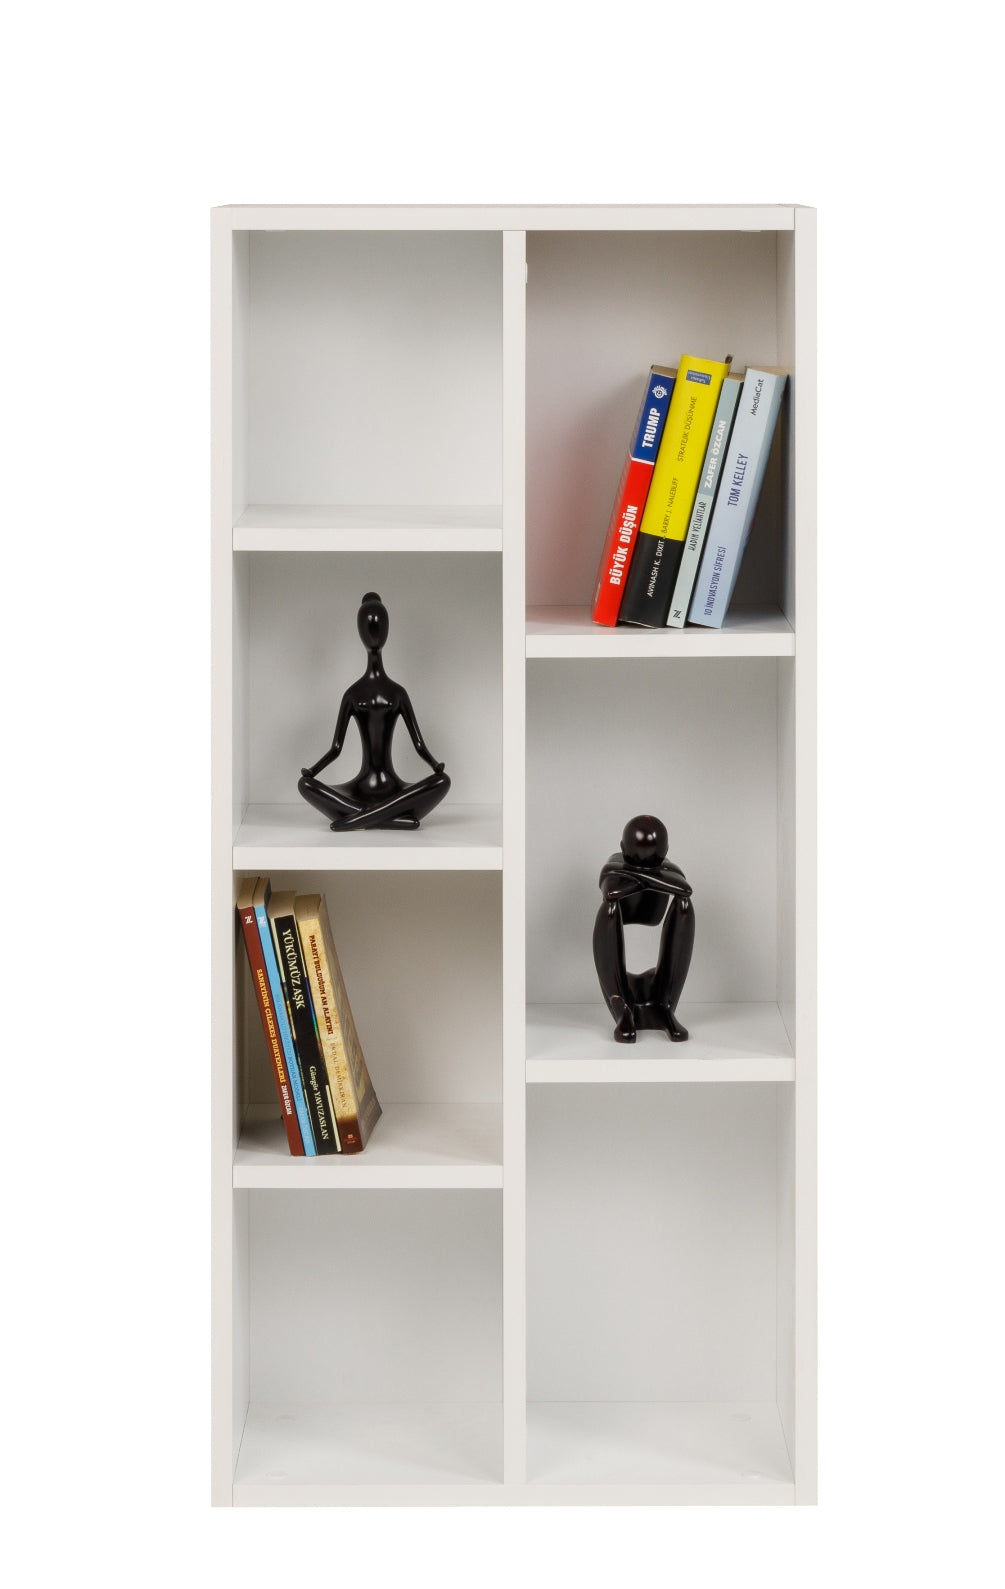 Bücherregal mit 7 Fächern, weiß, 49,5x24x106 cm